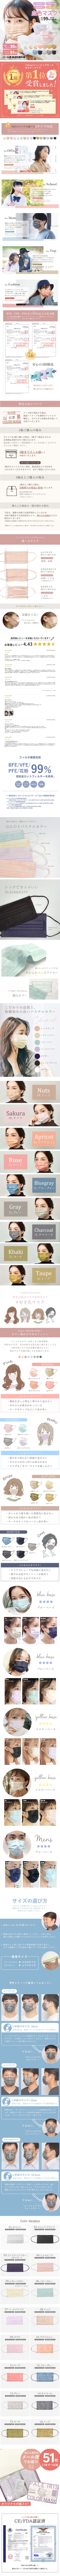 立体マスク バイカラー プリーツ 立体 不織布 カラー 血色 マスク 美人 小顔 不織布マスク 使い捨て 4D 3D 3Dマスク カラーマスク ジュエルフラップマスク ウェイビースタイル Jewel Flap Mask Wavy style 公式 WEIMALL bwme2